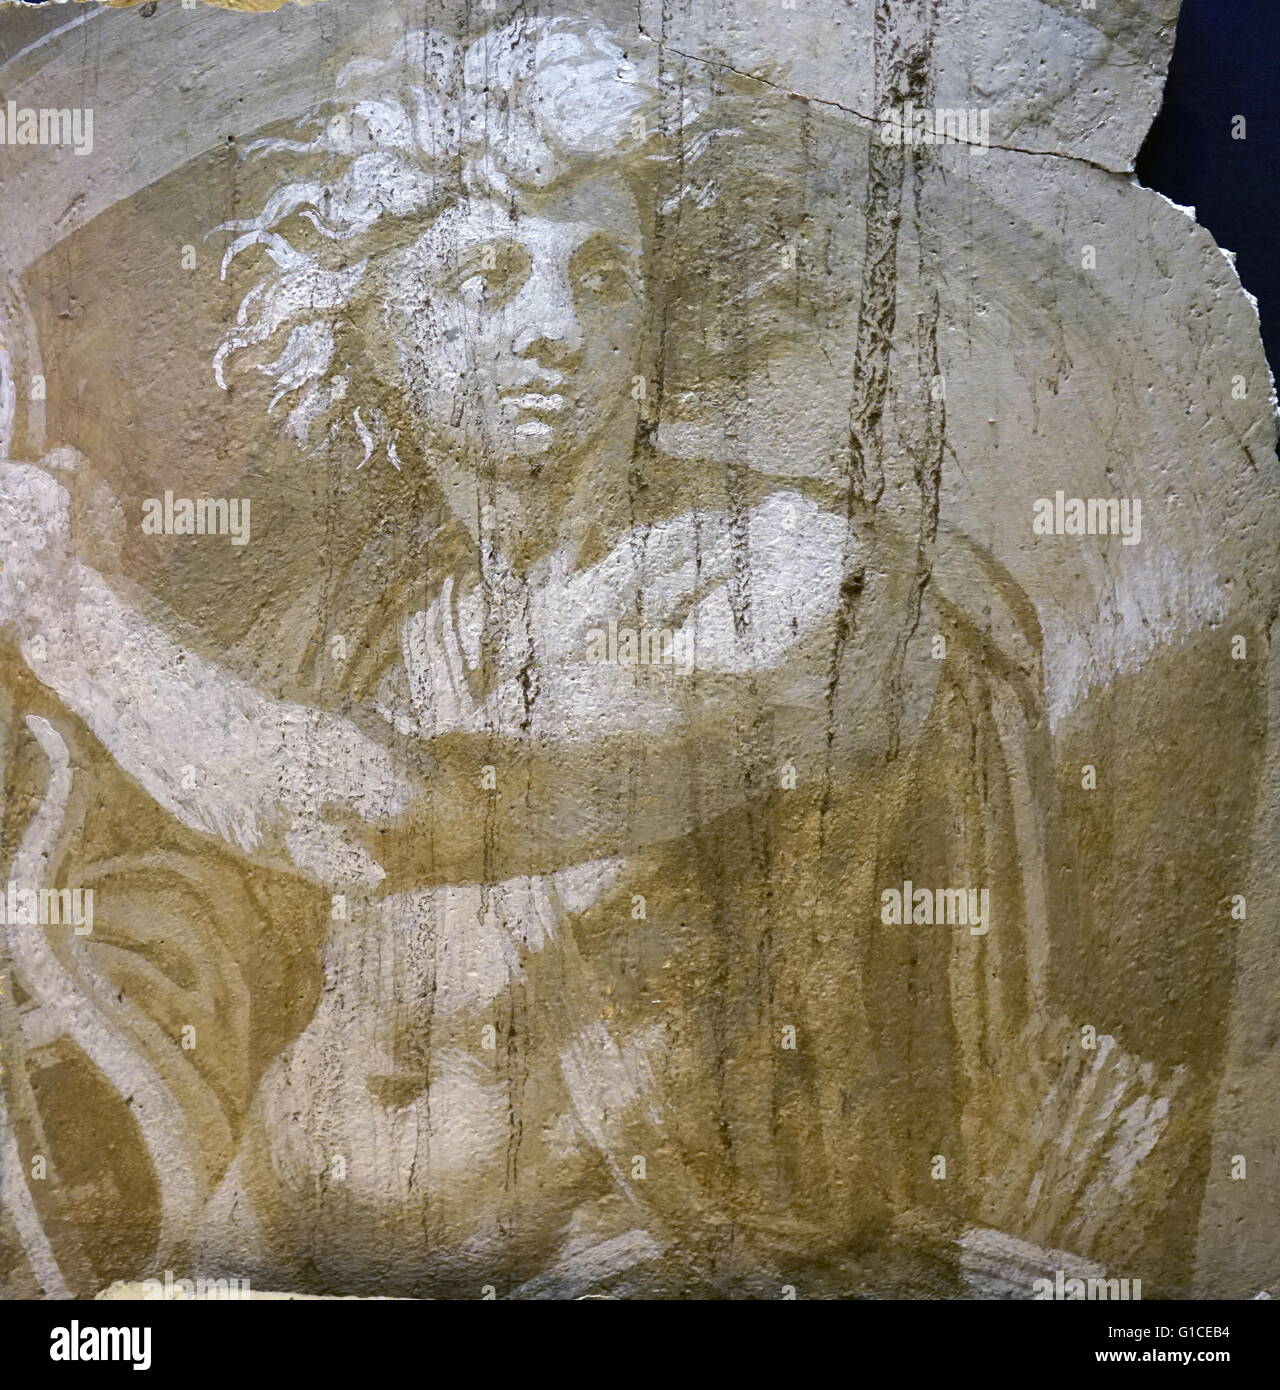 Stück von bemaltem Gips Apollo darstellt. Hendrick Goltzius (1558-1617) deutsch-stämmige niederländischen Grafiker, Zeichner und Maler. Datiert aus dem 16. Jahrhundert Stockfoto